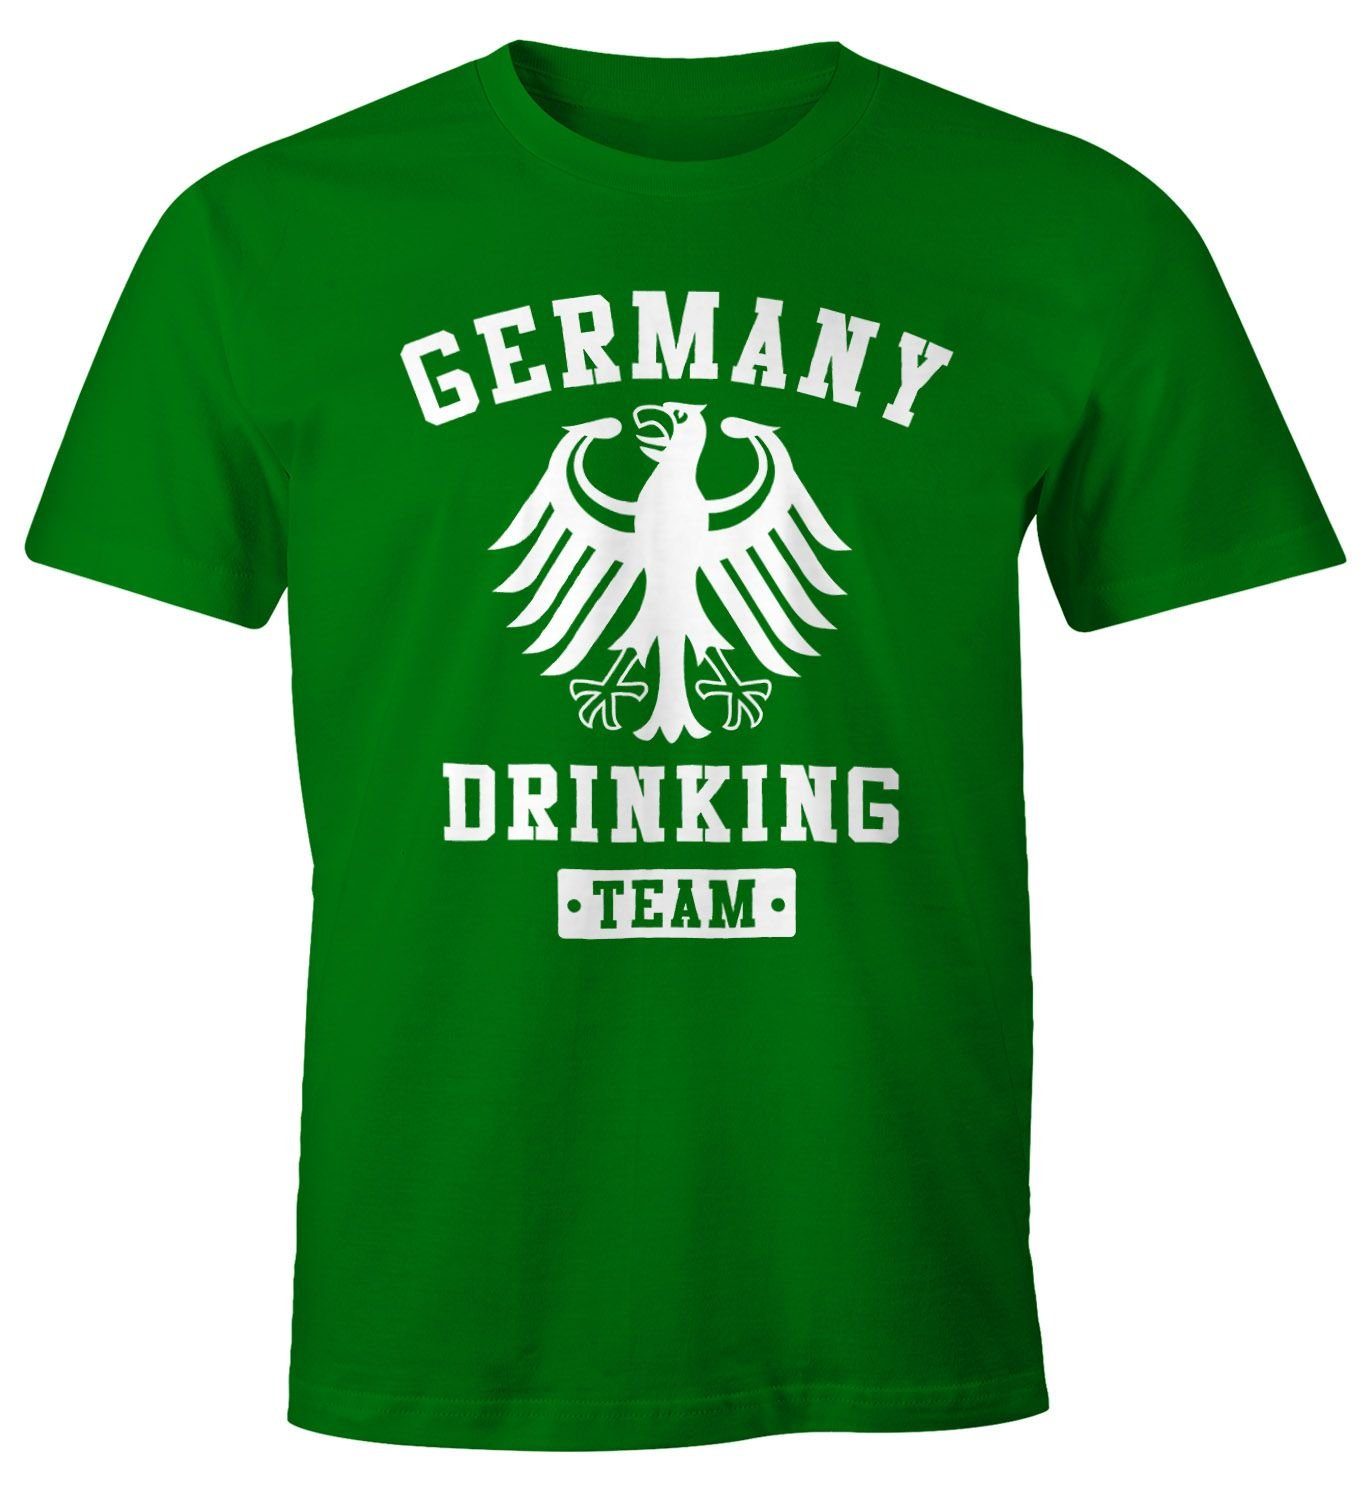 MoonWorks Print-Shirt Deutschland Herren T-Shirt Germany Drinking Team Bier Adler Fun-Shirt Moonworks® mit Print grün | T-Shirts